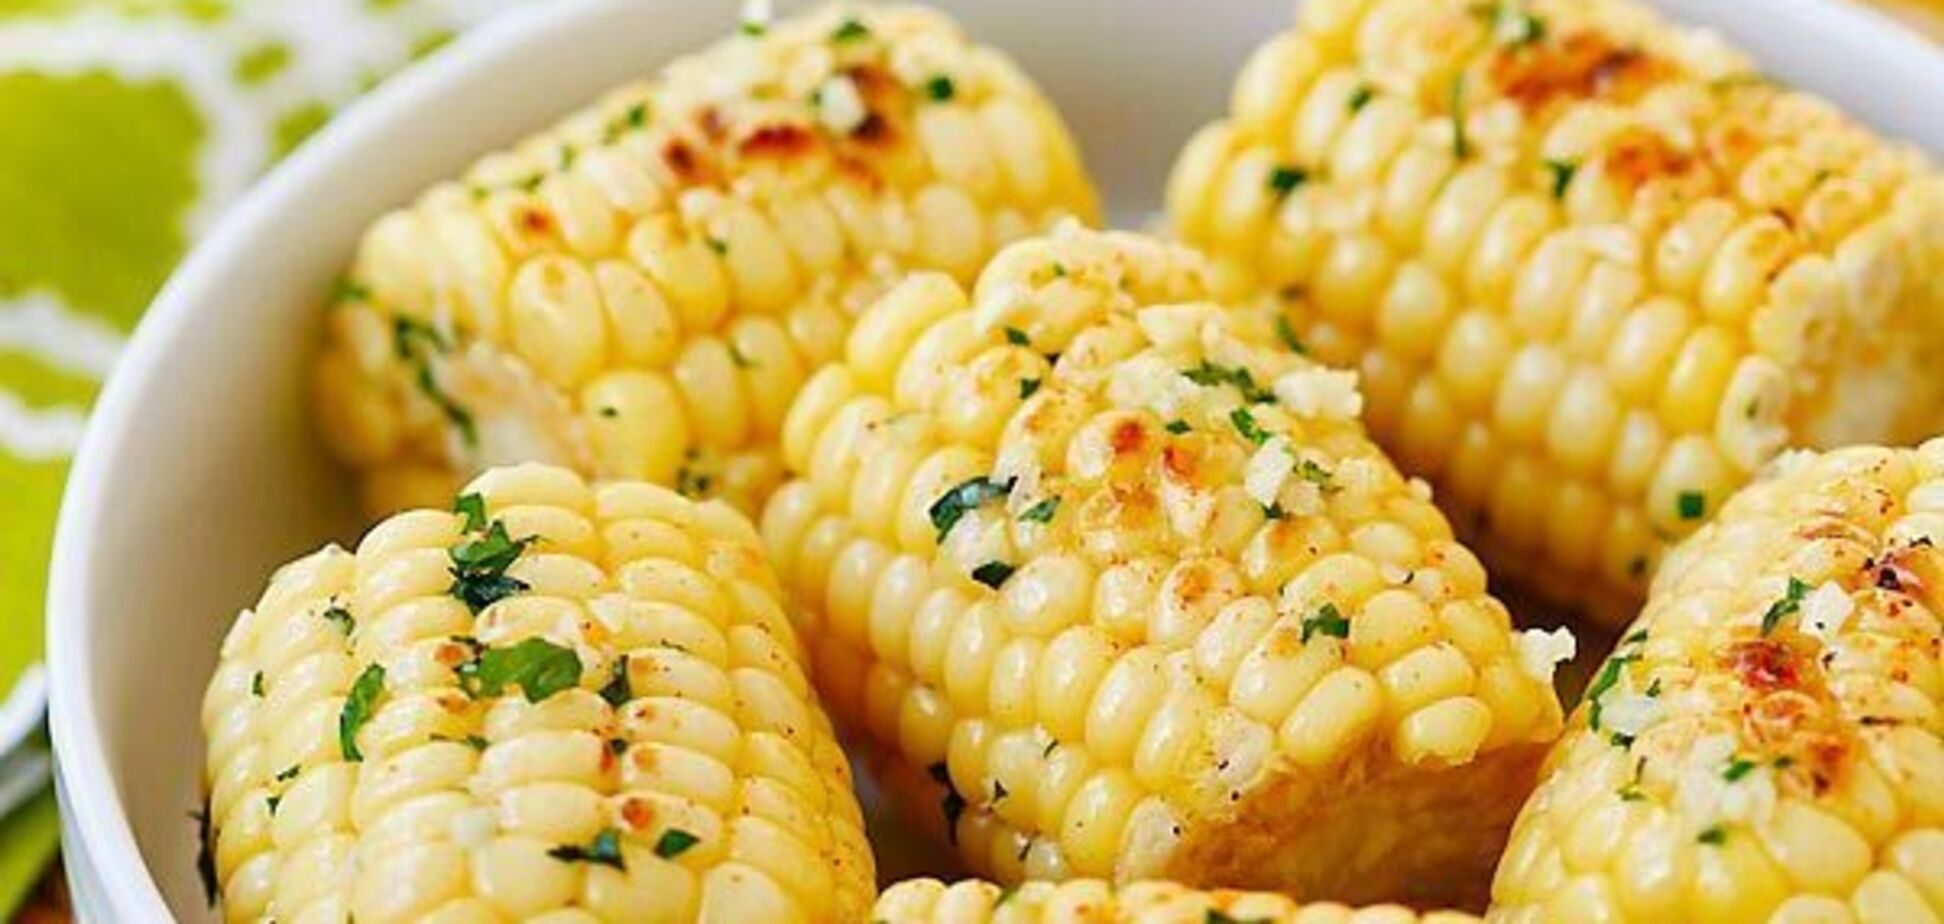 Як смачно та швидко приготувати кукурудзу: бюджетний варіант 